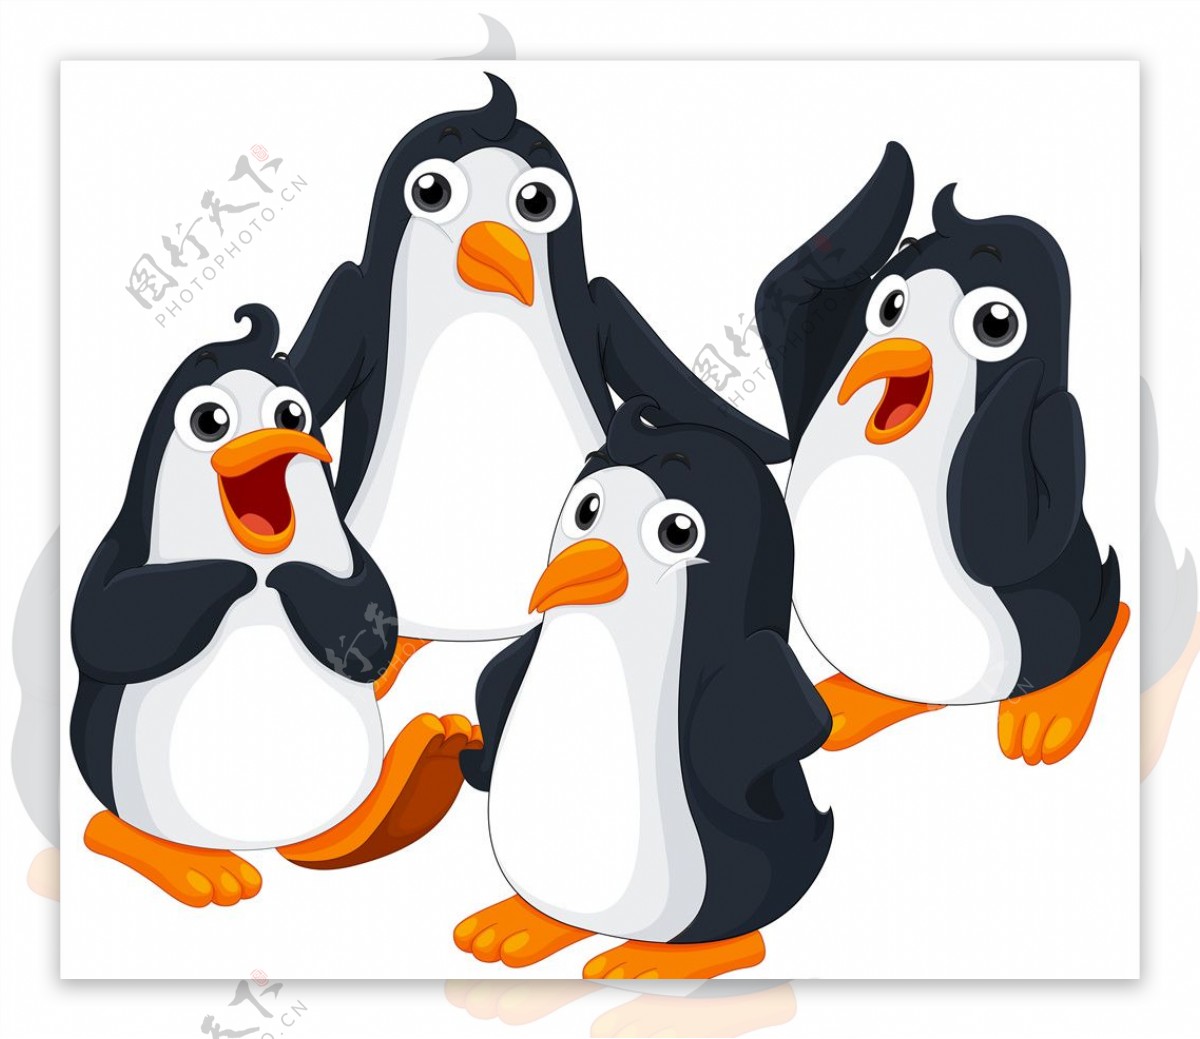 企鹅QQ图片素材-编号11314874-图行天下